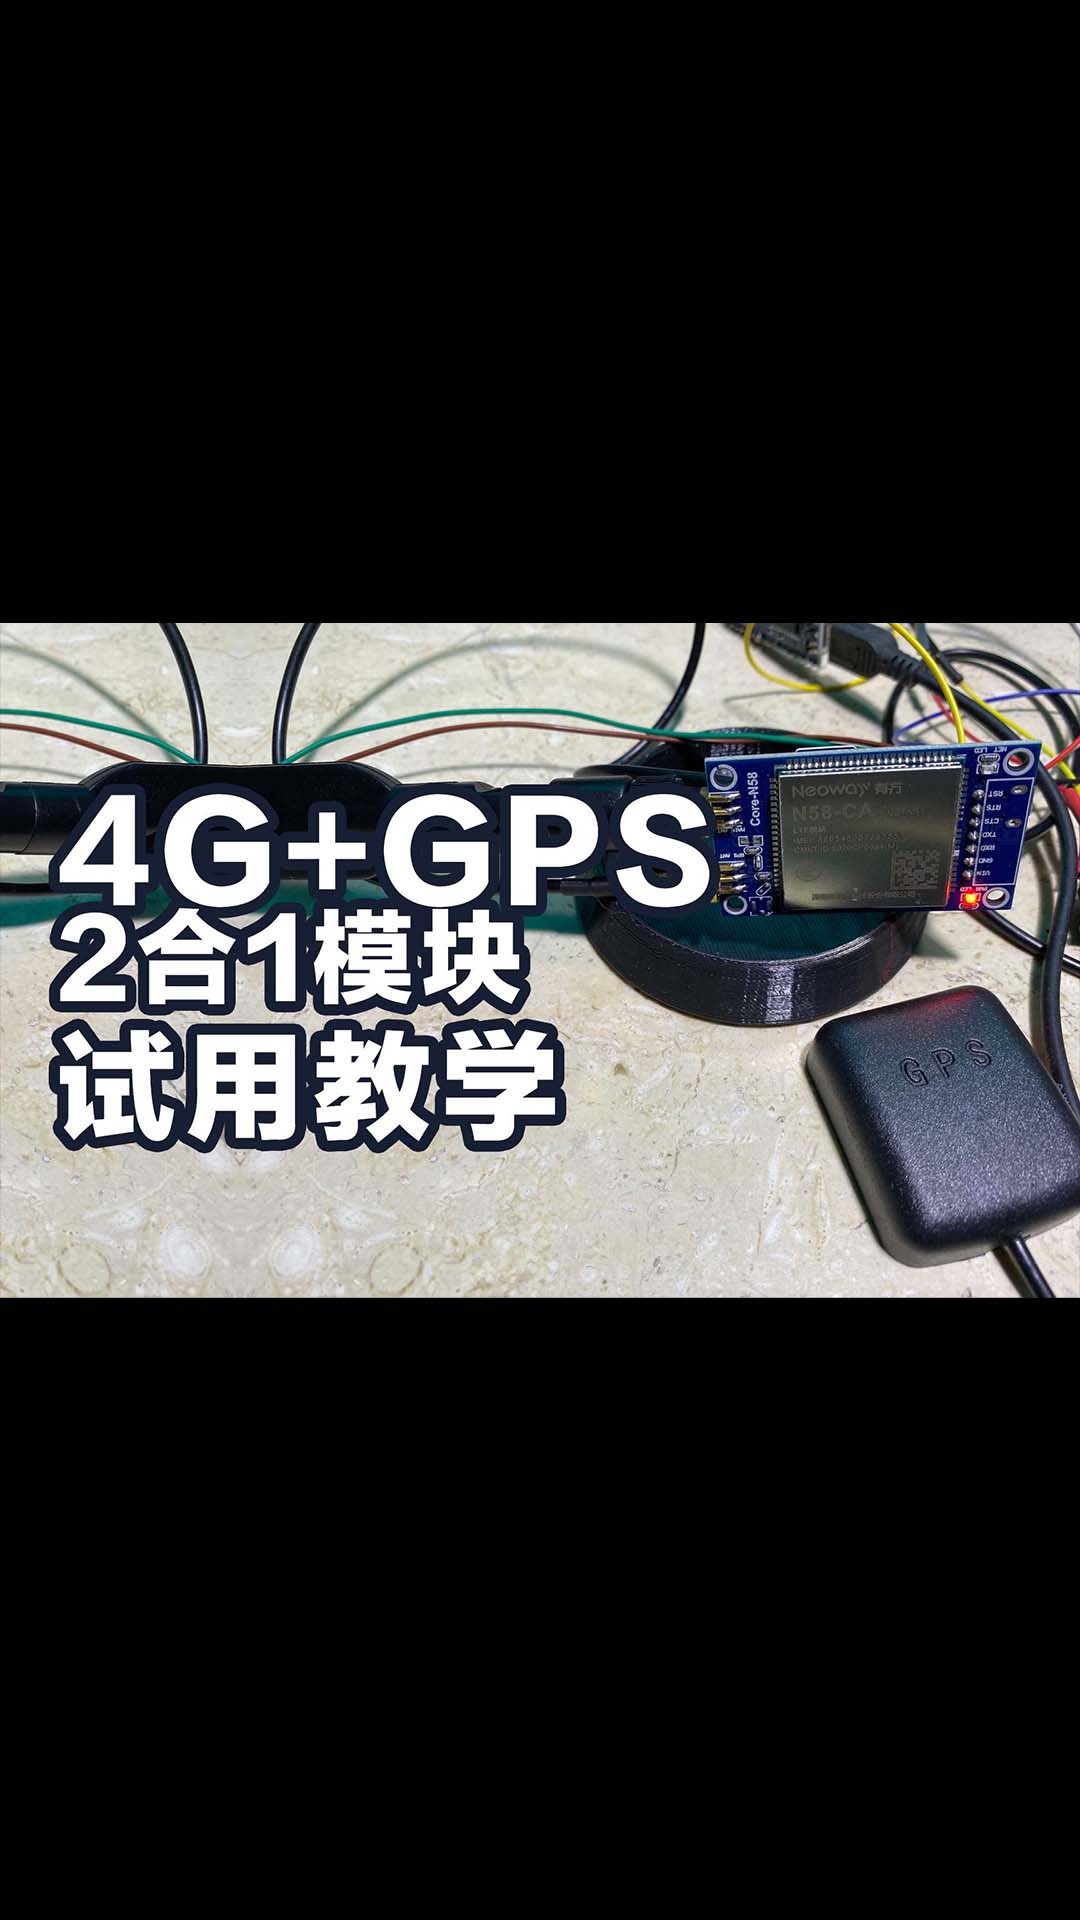 arduino DIY汽車監控 4G+GPS 2合1模塊 試用和AT命令教學 有方 n58-ca